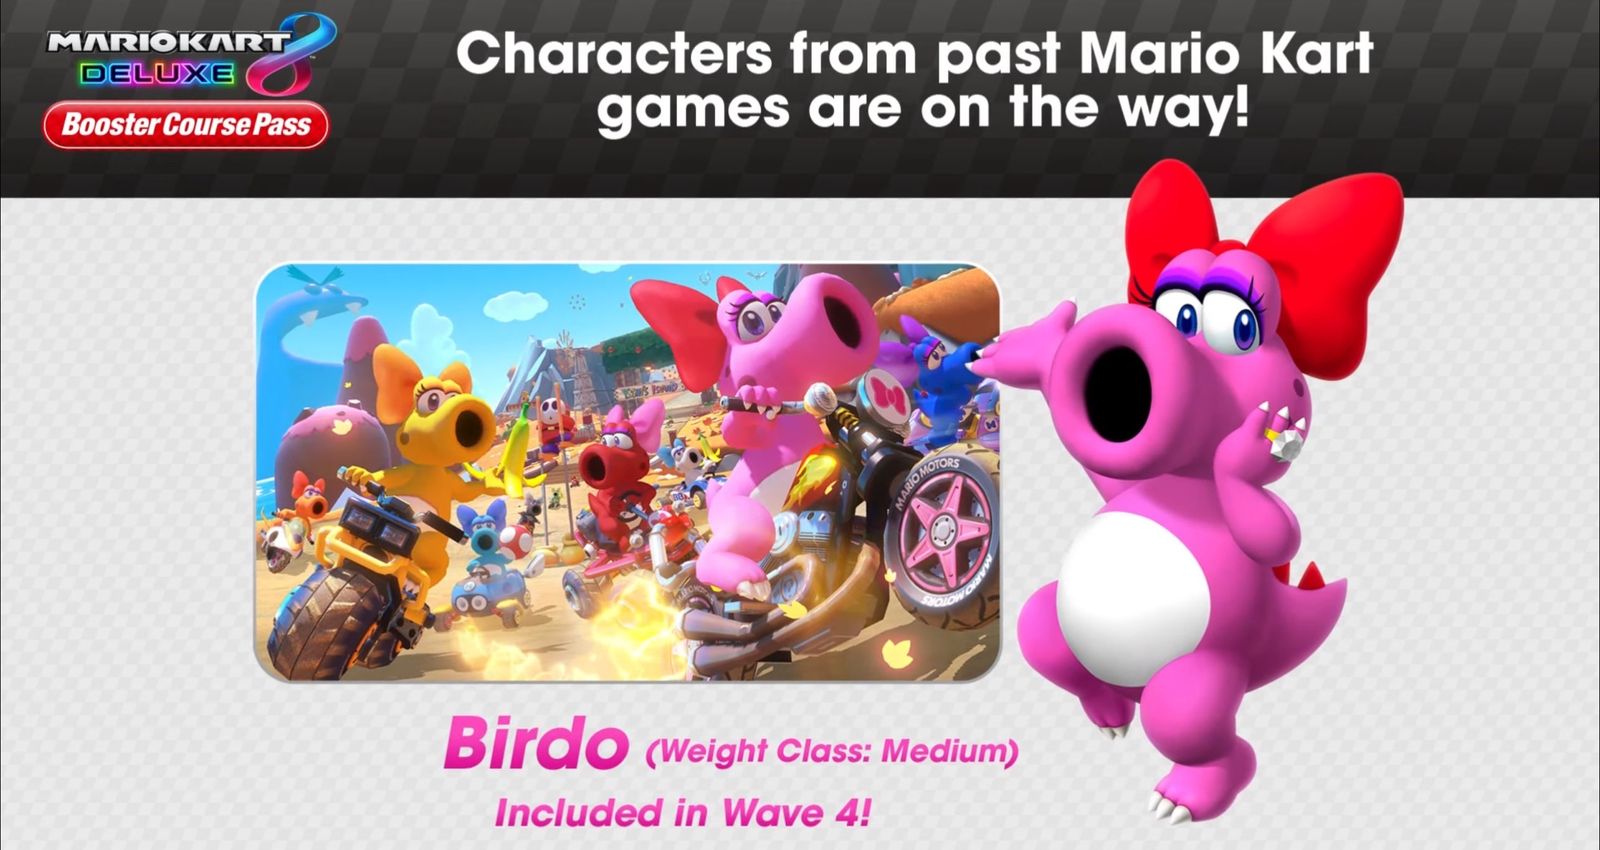 Birdo joins Mario Kart 8 Deluxe in Wave 4 DLC